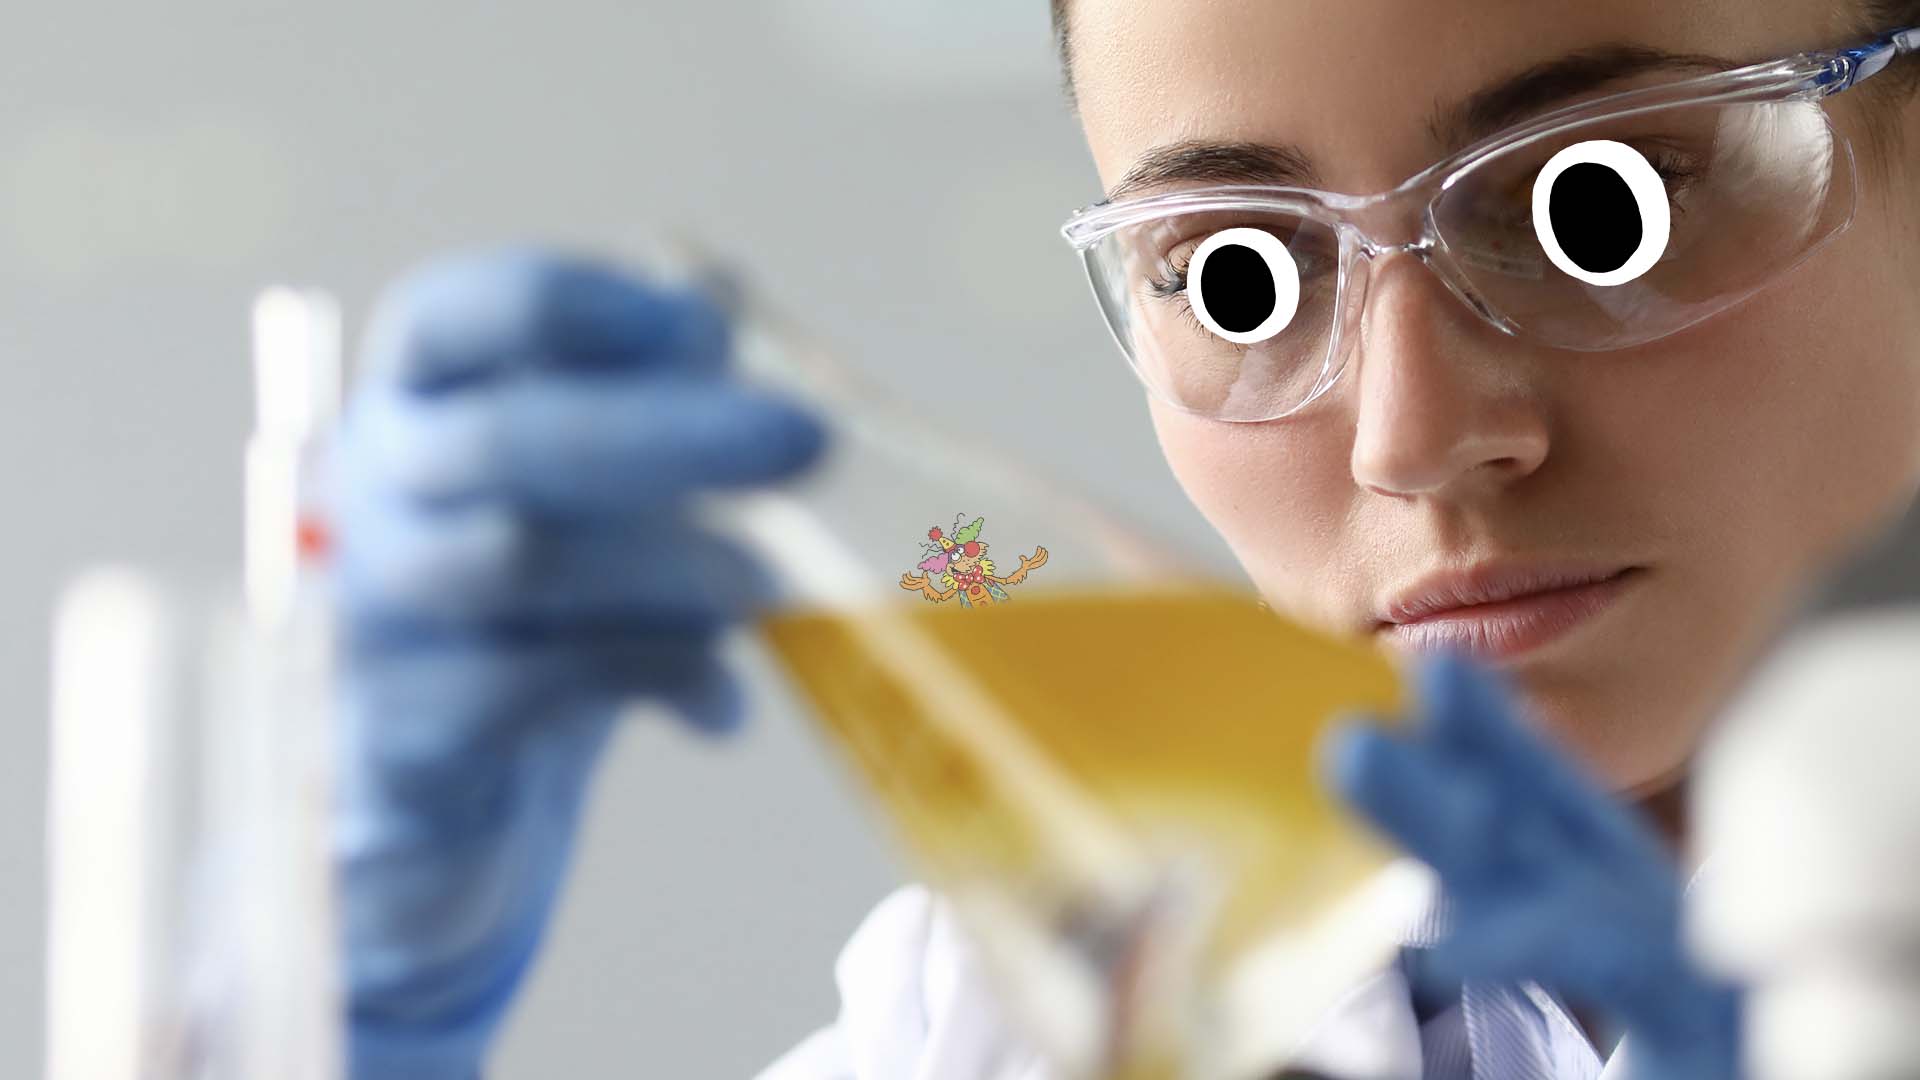 A scientist examining a flea